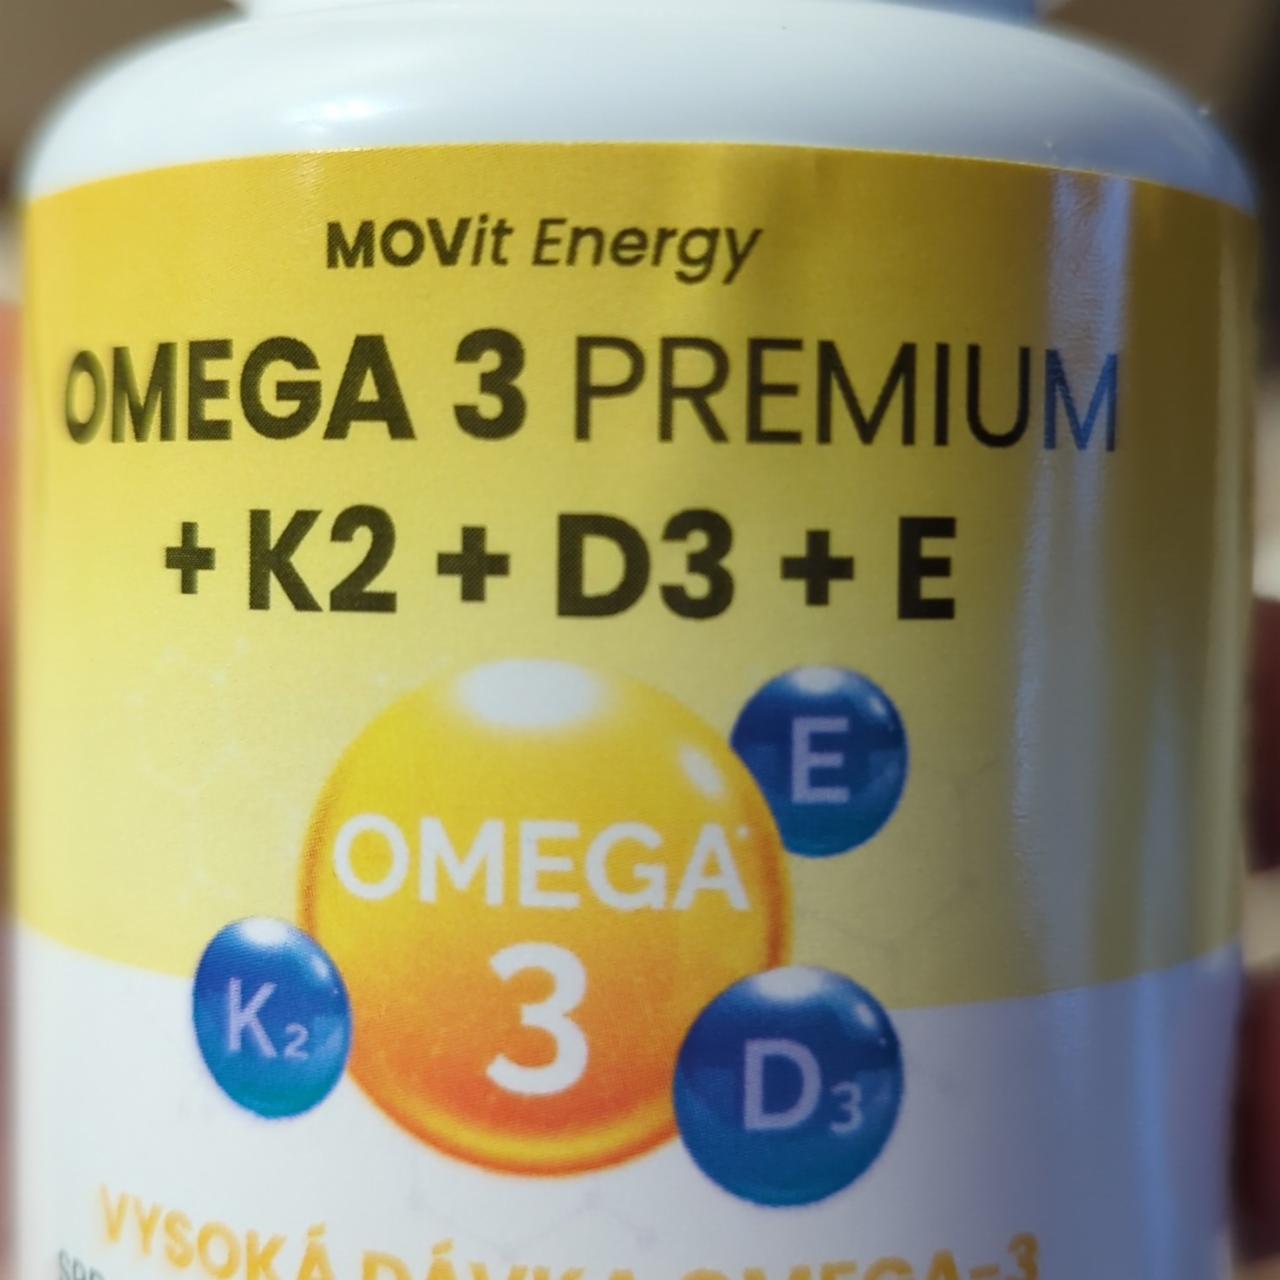 Fotografie - Omega 3 premium + K2 + D3 + E MOVit Energy